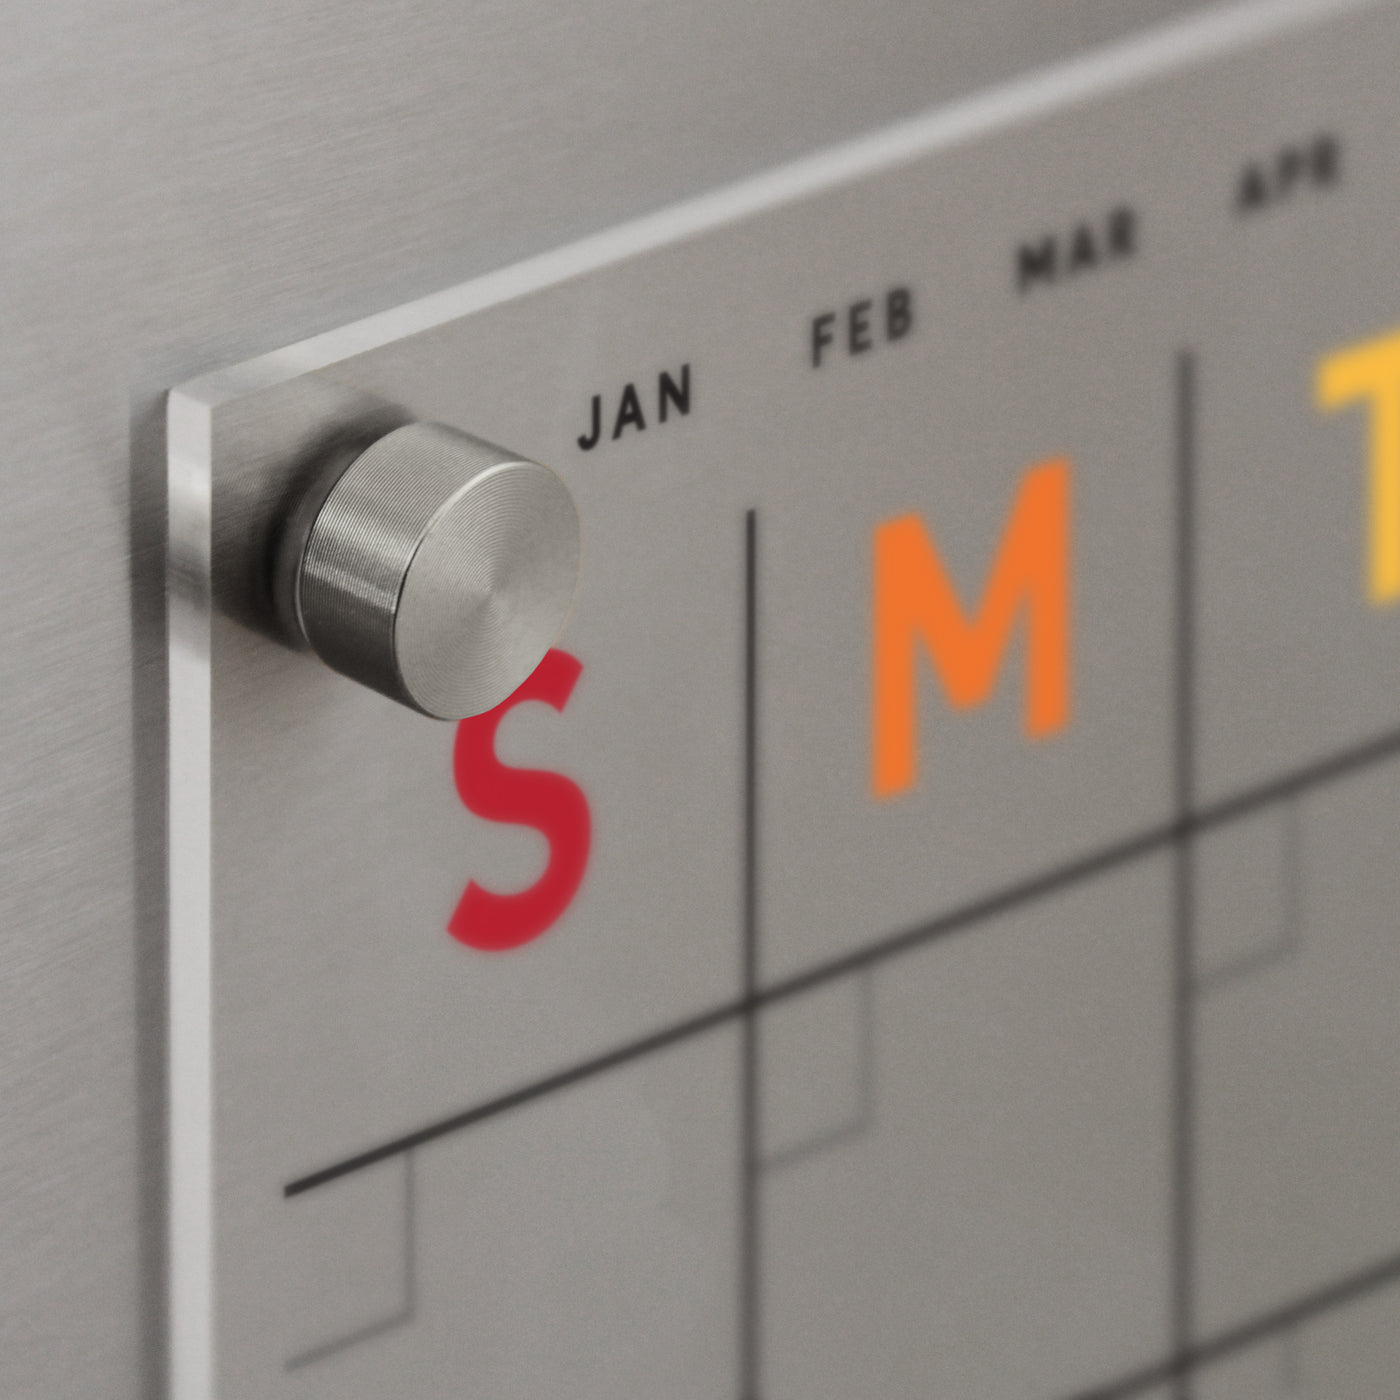 Acrylic fridge calendar with rainbow text